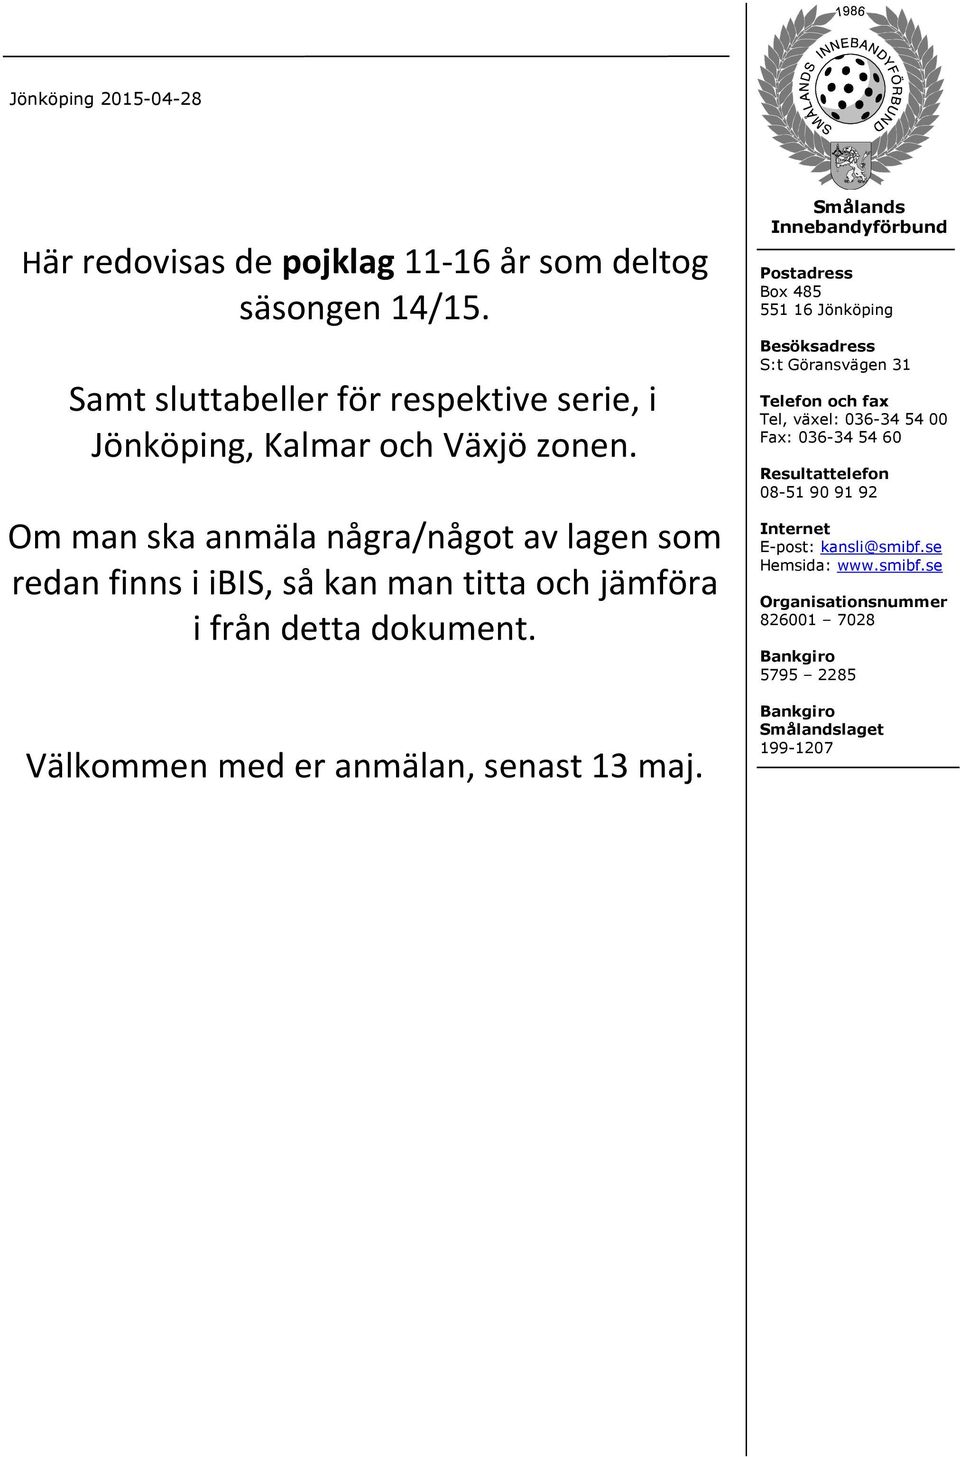 Smålands Innebandyförbund Postadress B ox 485 551 16 Jön köpin g Besöksadress S:tGöran svägen 31 Telefon och fax Tel,växel: 036-34 54 00 Fax: 036-34 54 60